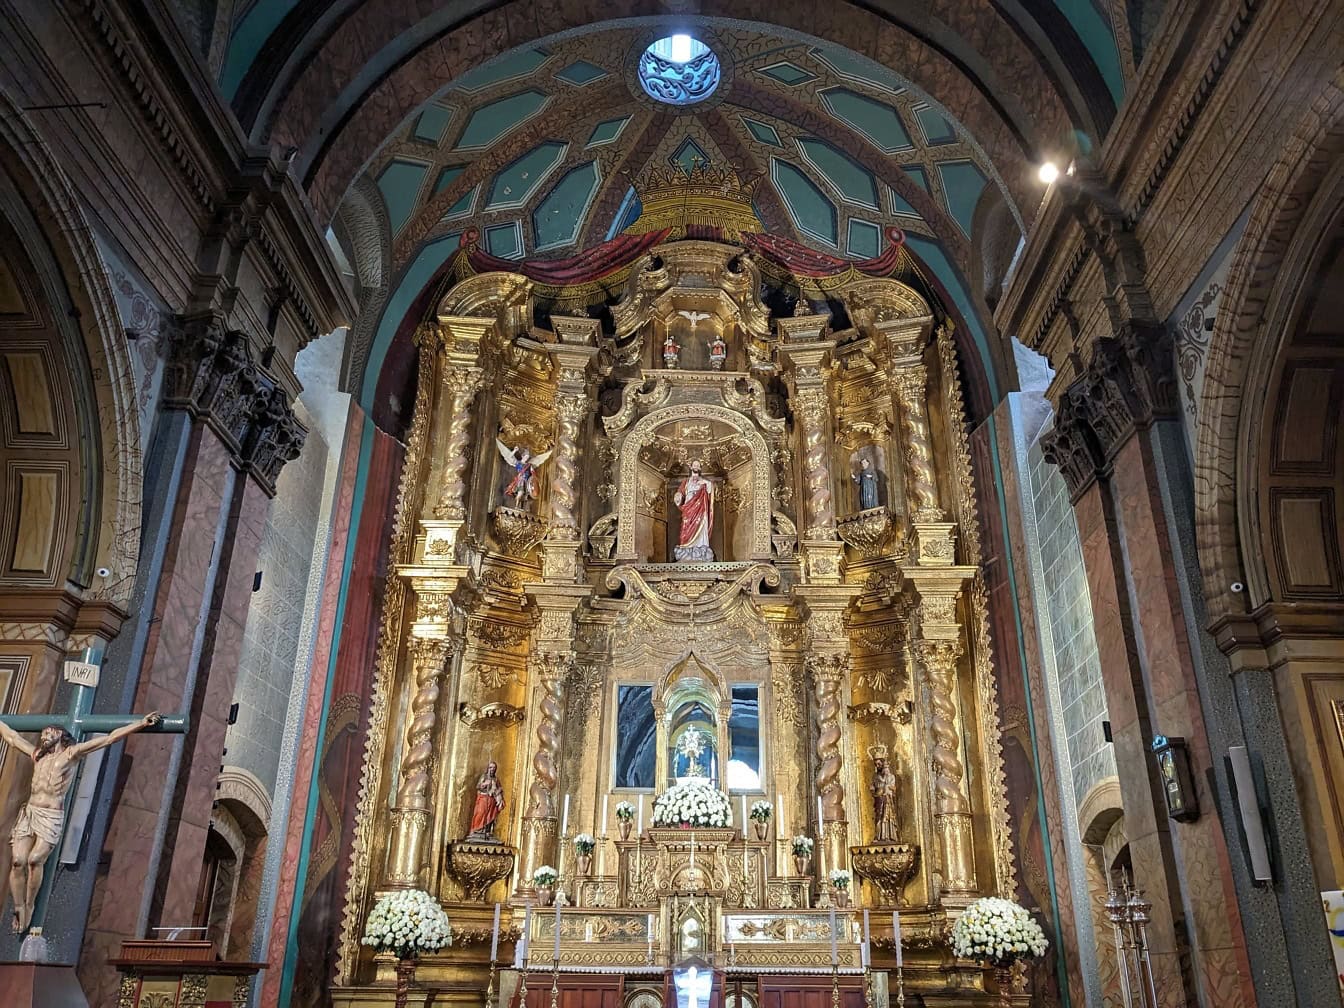 Χρυσός περίτεχνος βωμός με αγάλματα σε μια αναγεννησιακή καθολική εκκλησία της Σκηνής του Μαρτυρίου στο Κίτο, πρωτεύουσα του Ισημερινού